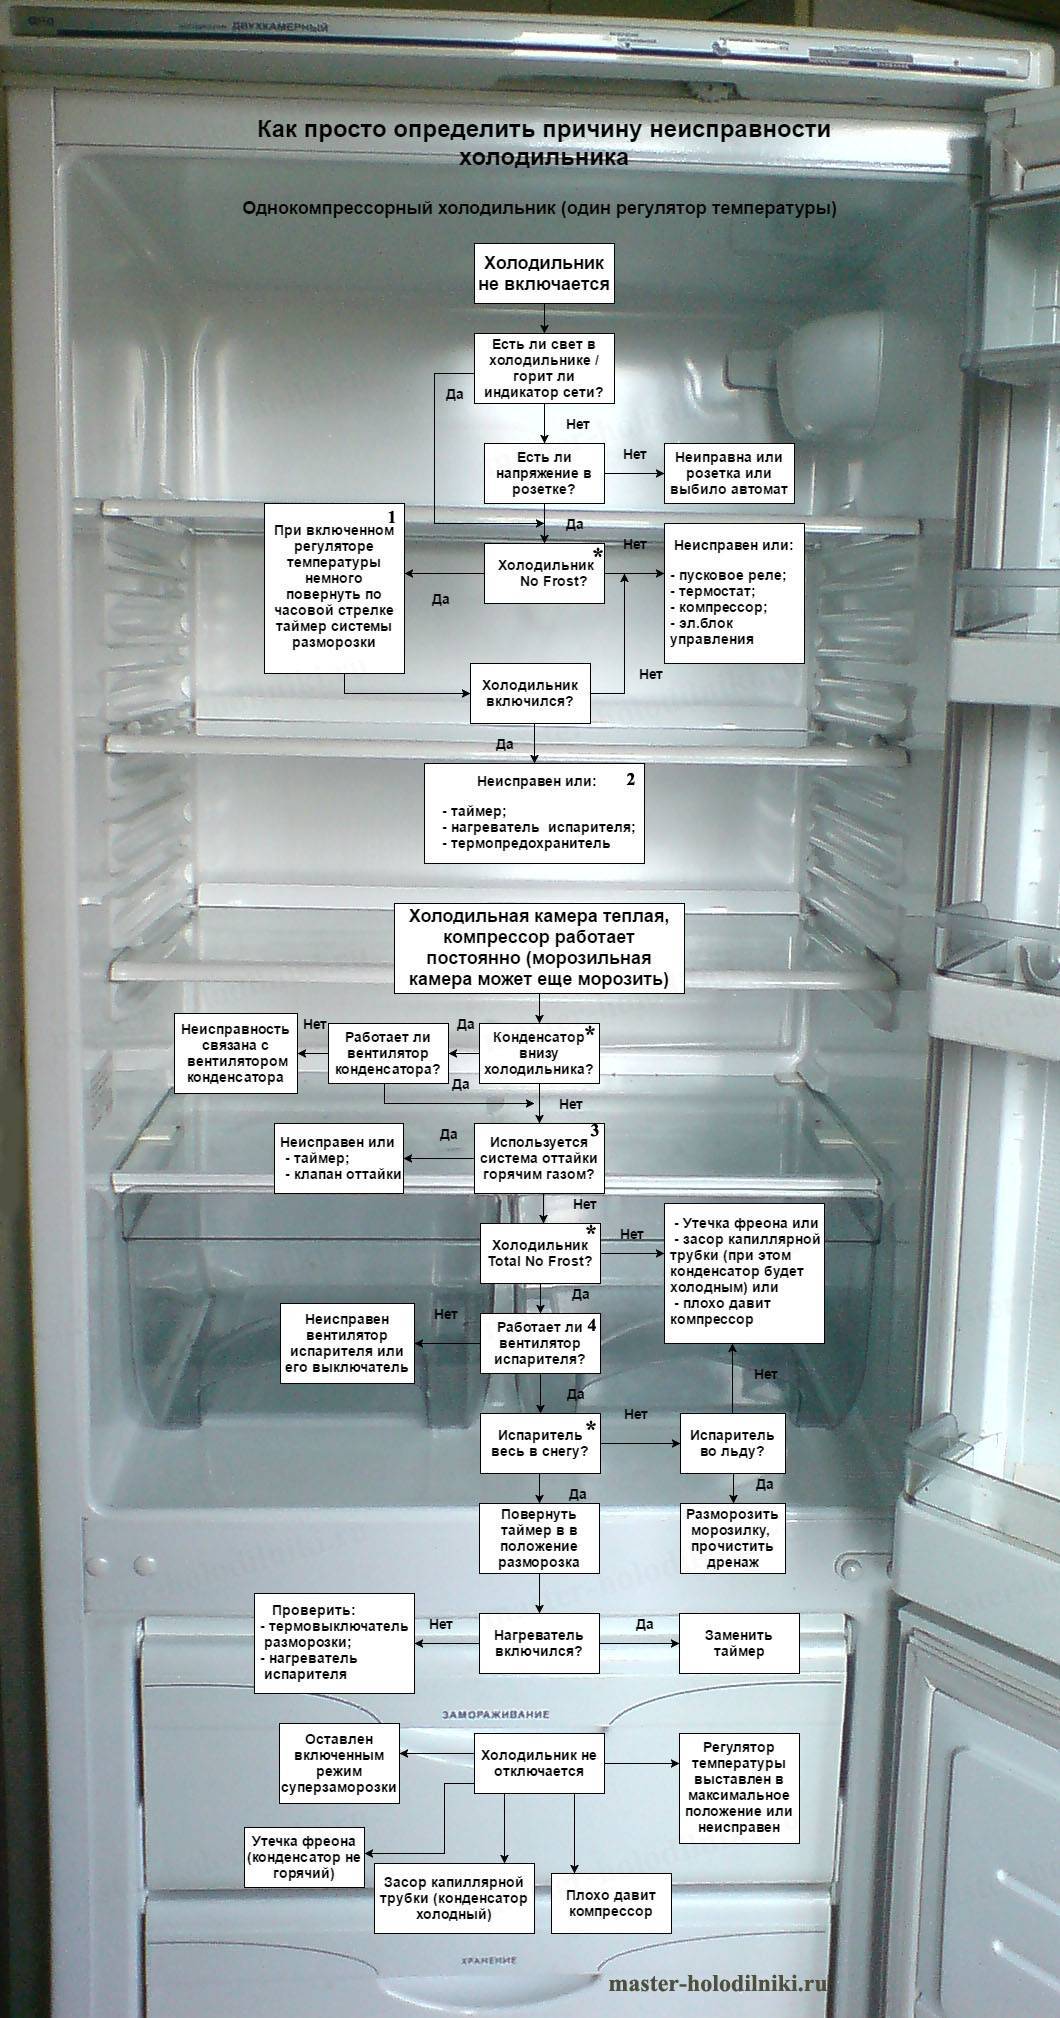 Почему холодильник работает, но не морозит - причины и способы устранения